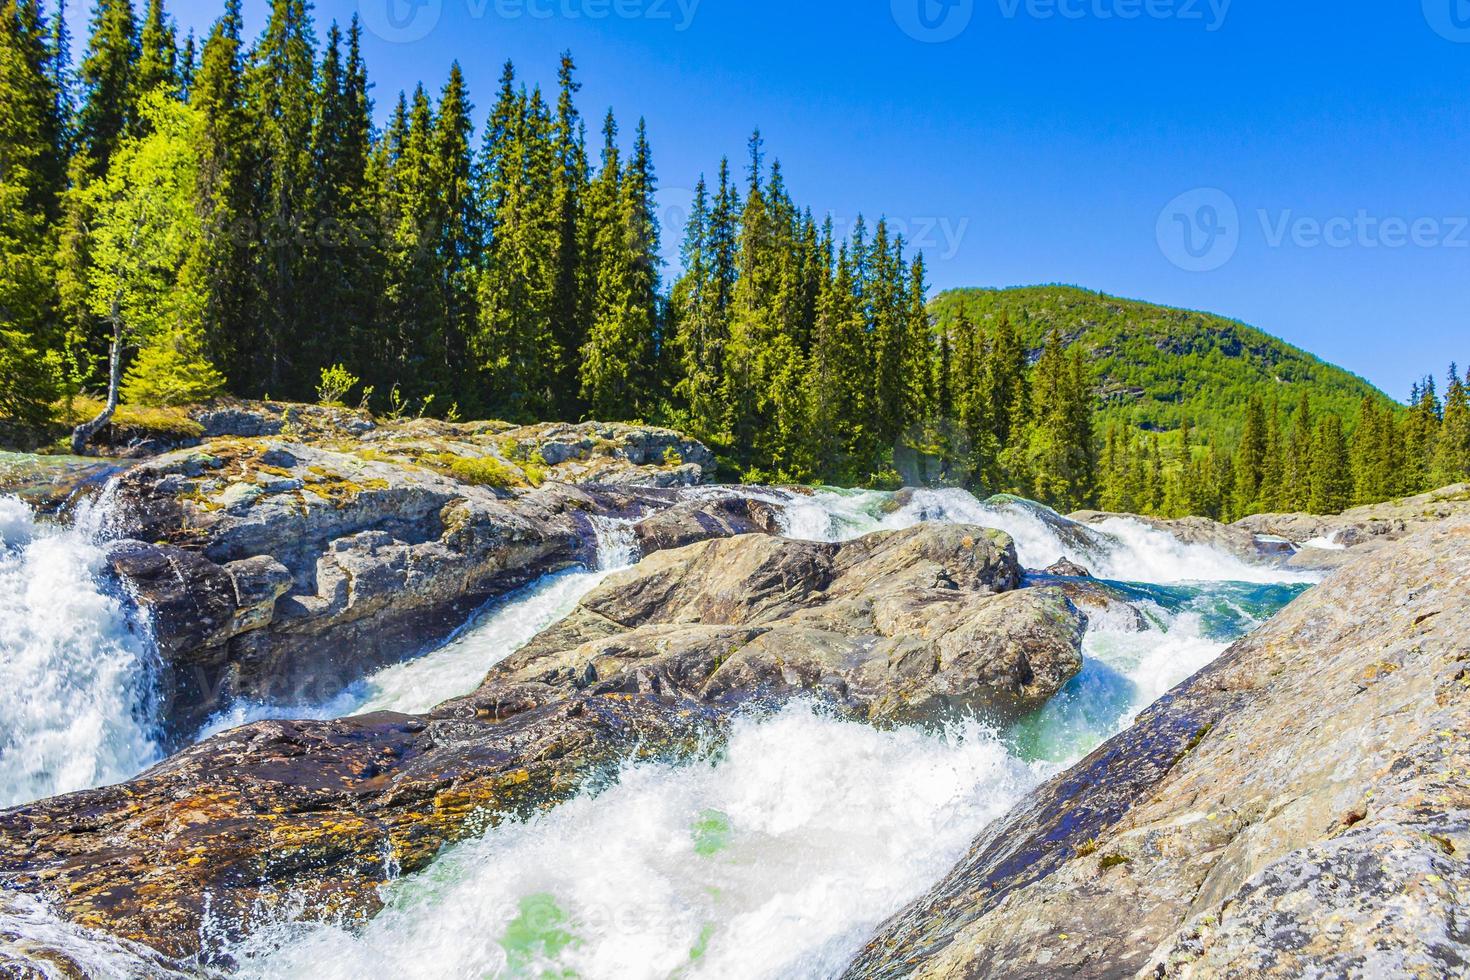 acqua di fiume che scorre veloce della bellissima cascata rjukandefossen hemsedal norvegia. foto